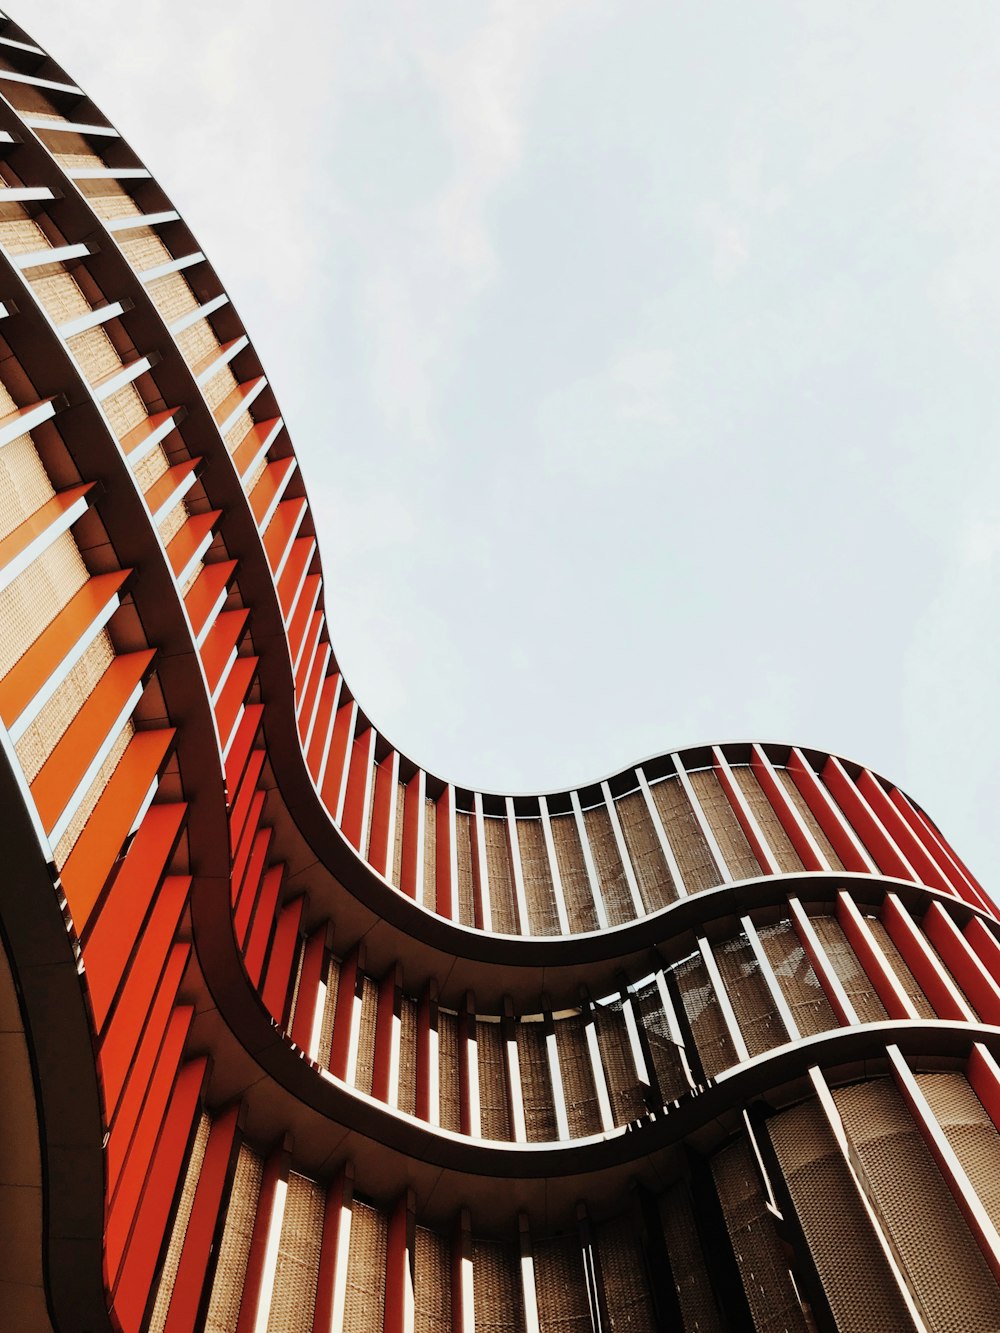 Blick aus einem niedrigen Winkel auf ein orangefarbenes und braunes architektonisches Gebäude